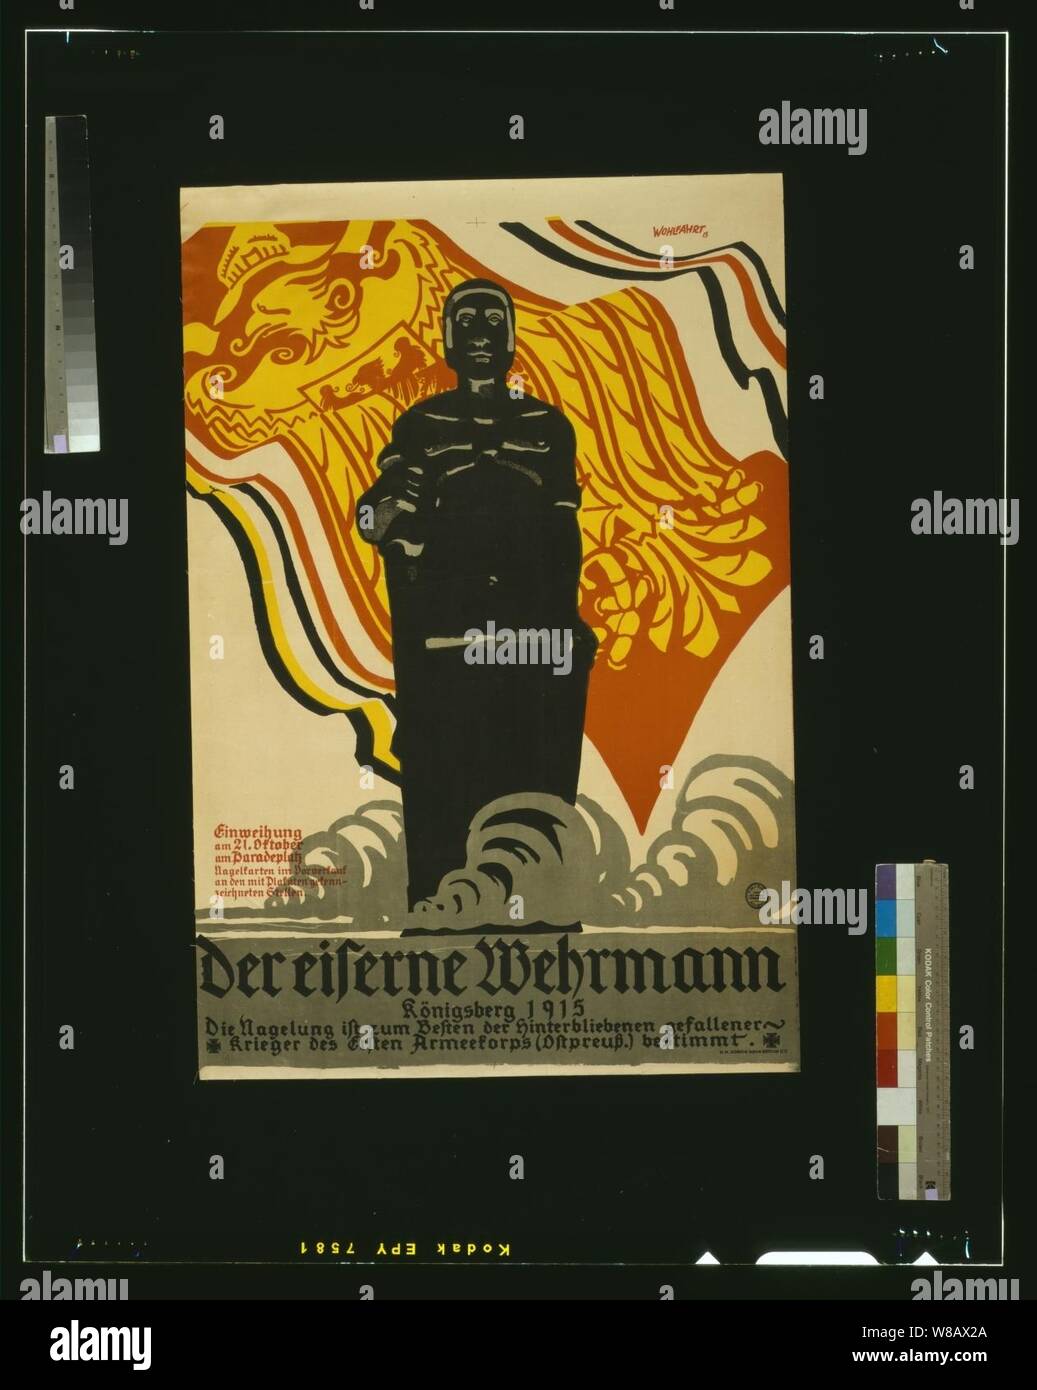 Der eiserner Wehrmann, Königsberg 1915 - Wohlfahrt '15. Stock Photo